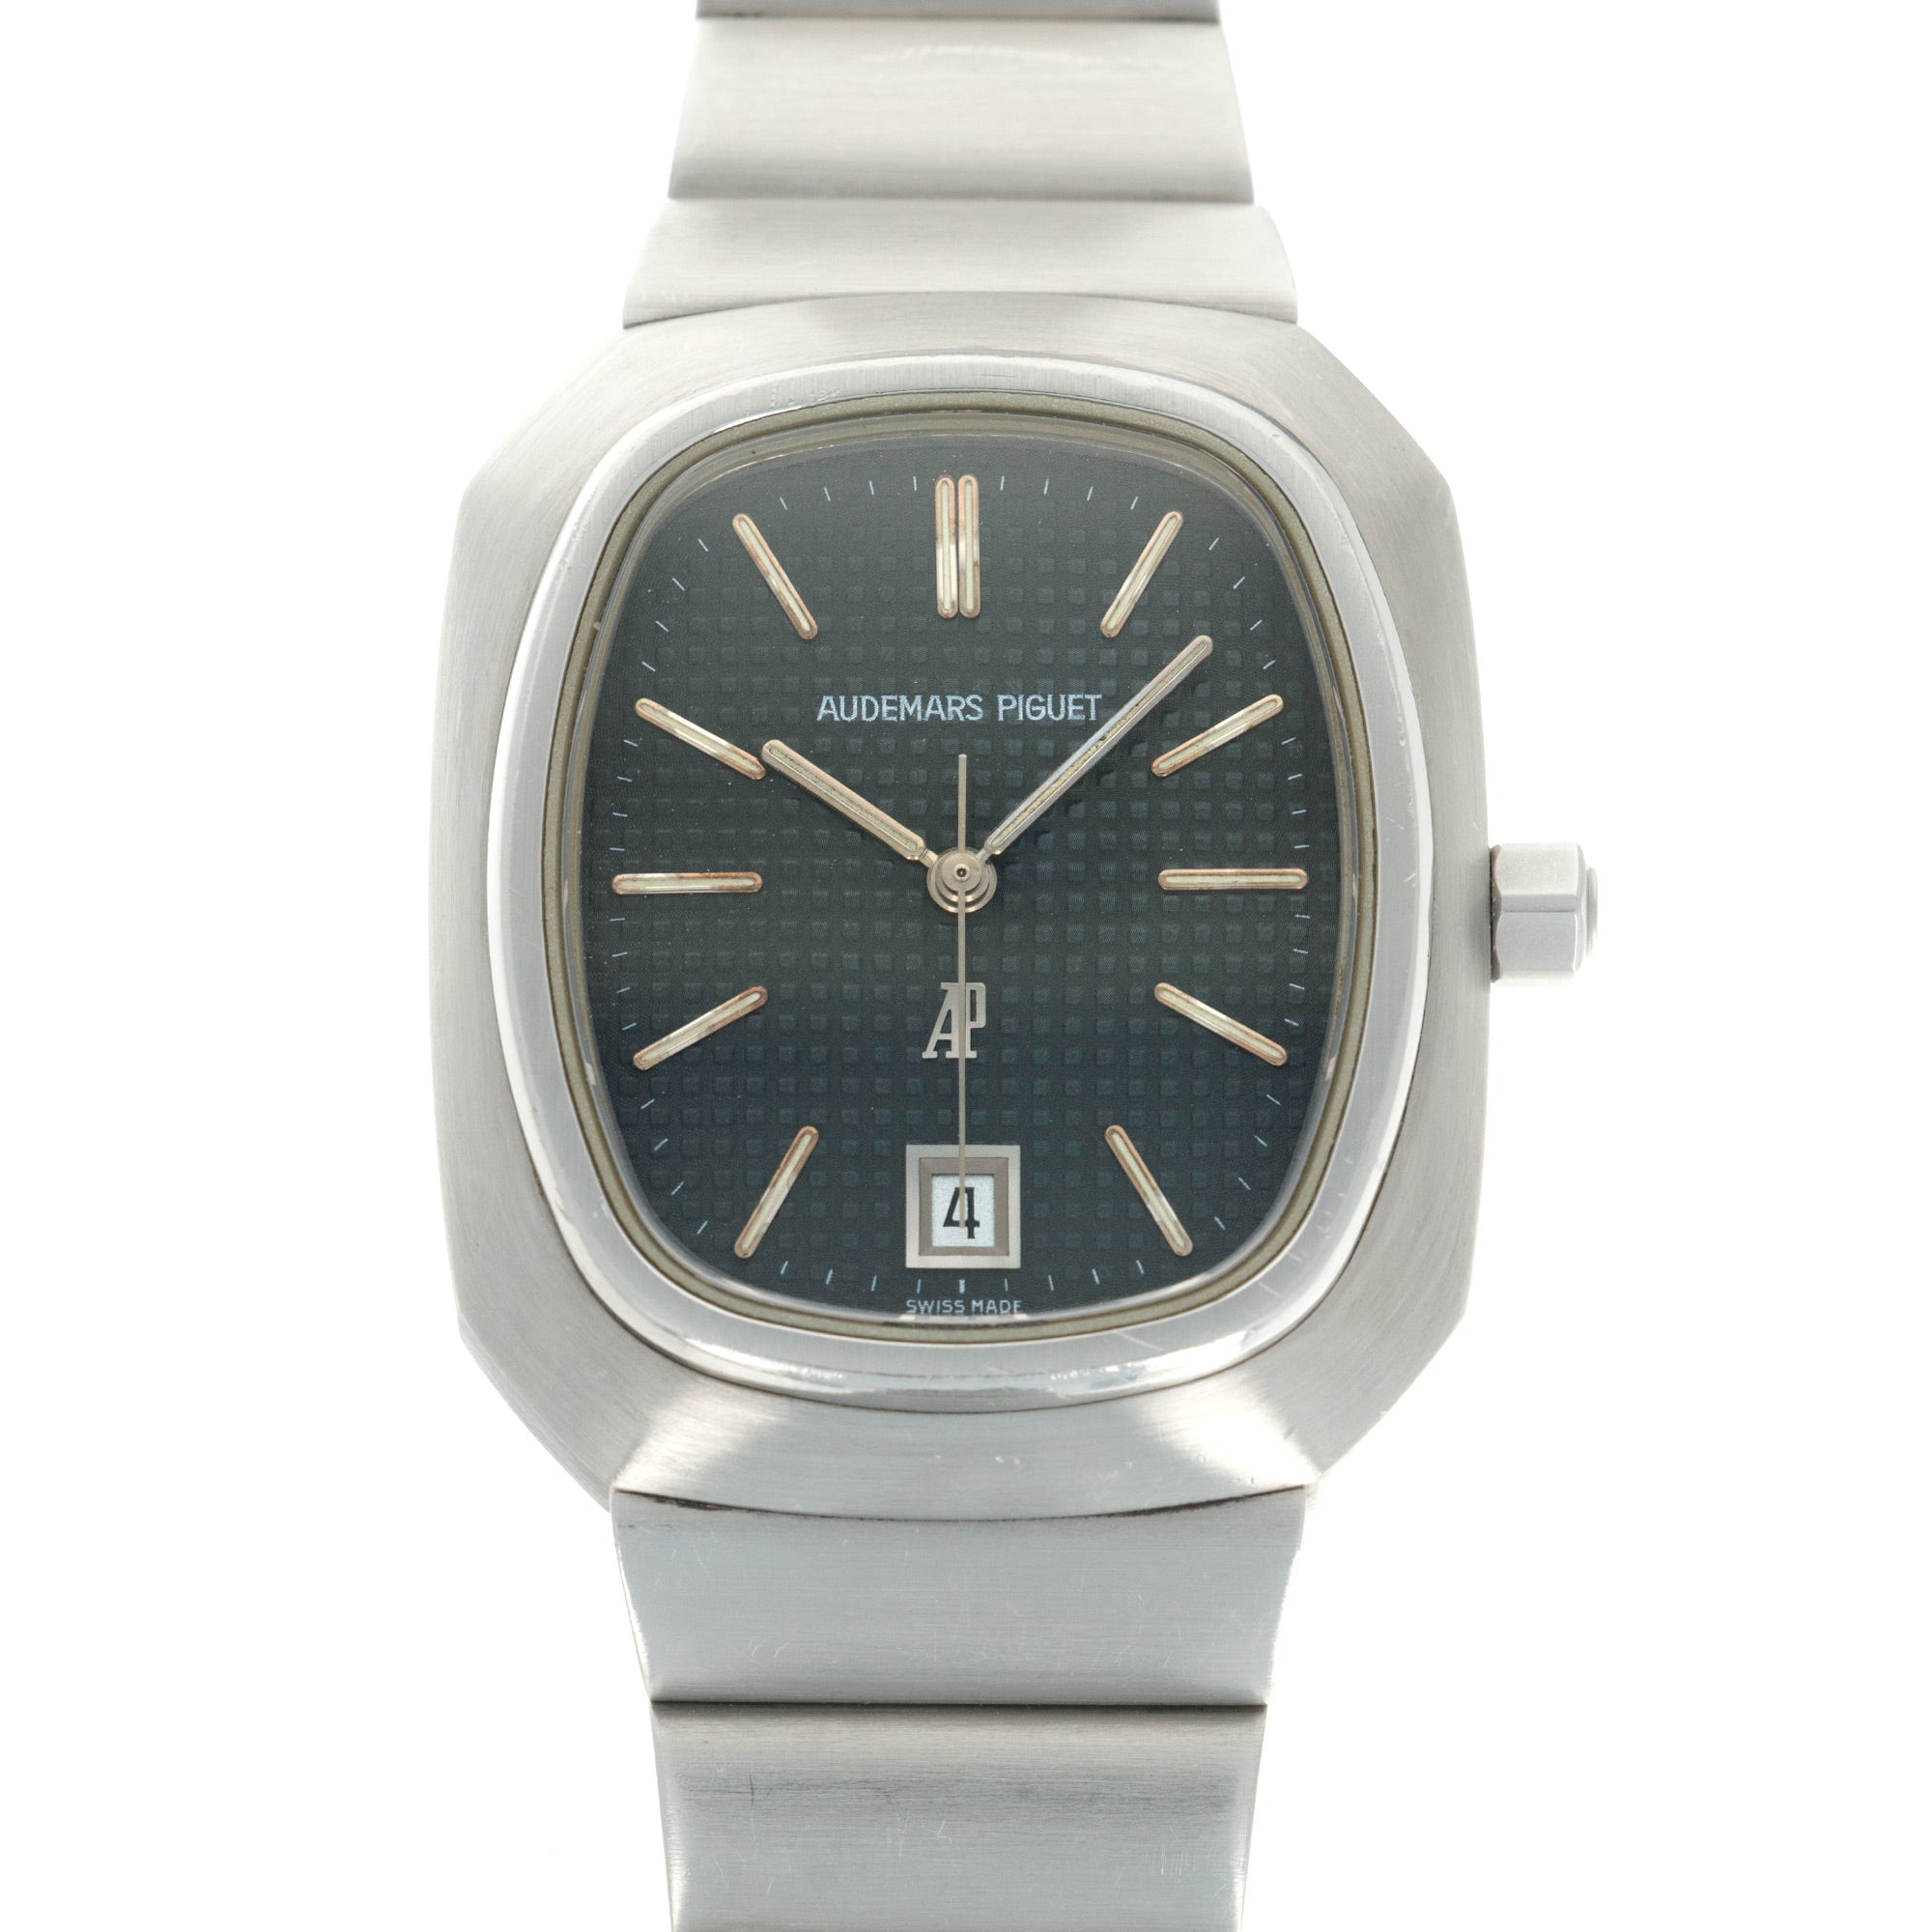 Audemars Piguet - Audemars Piguet Royal Oak Beta 21 Watch Ref. 6001, 1975 - The Keystone Watches